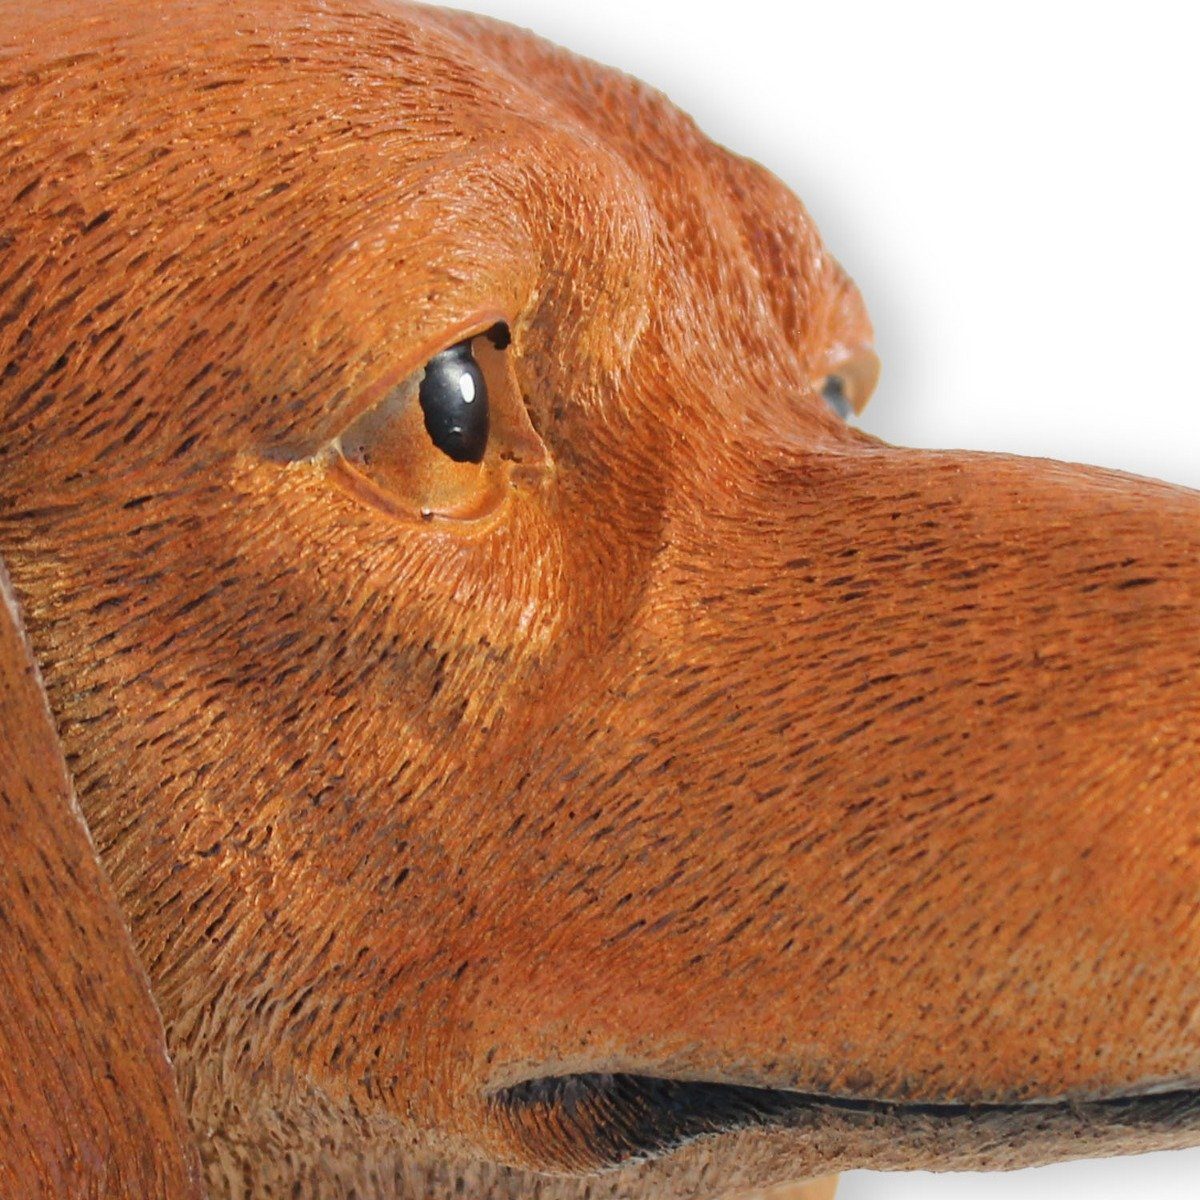 Tierfigur realistische Figur handbemalt, Hunde Tierfigur, Gisbert stehend Dackel Darstellung Hund colourliving